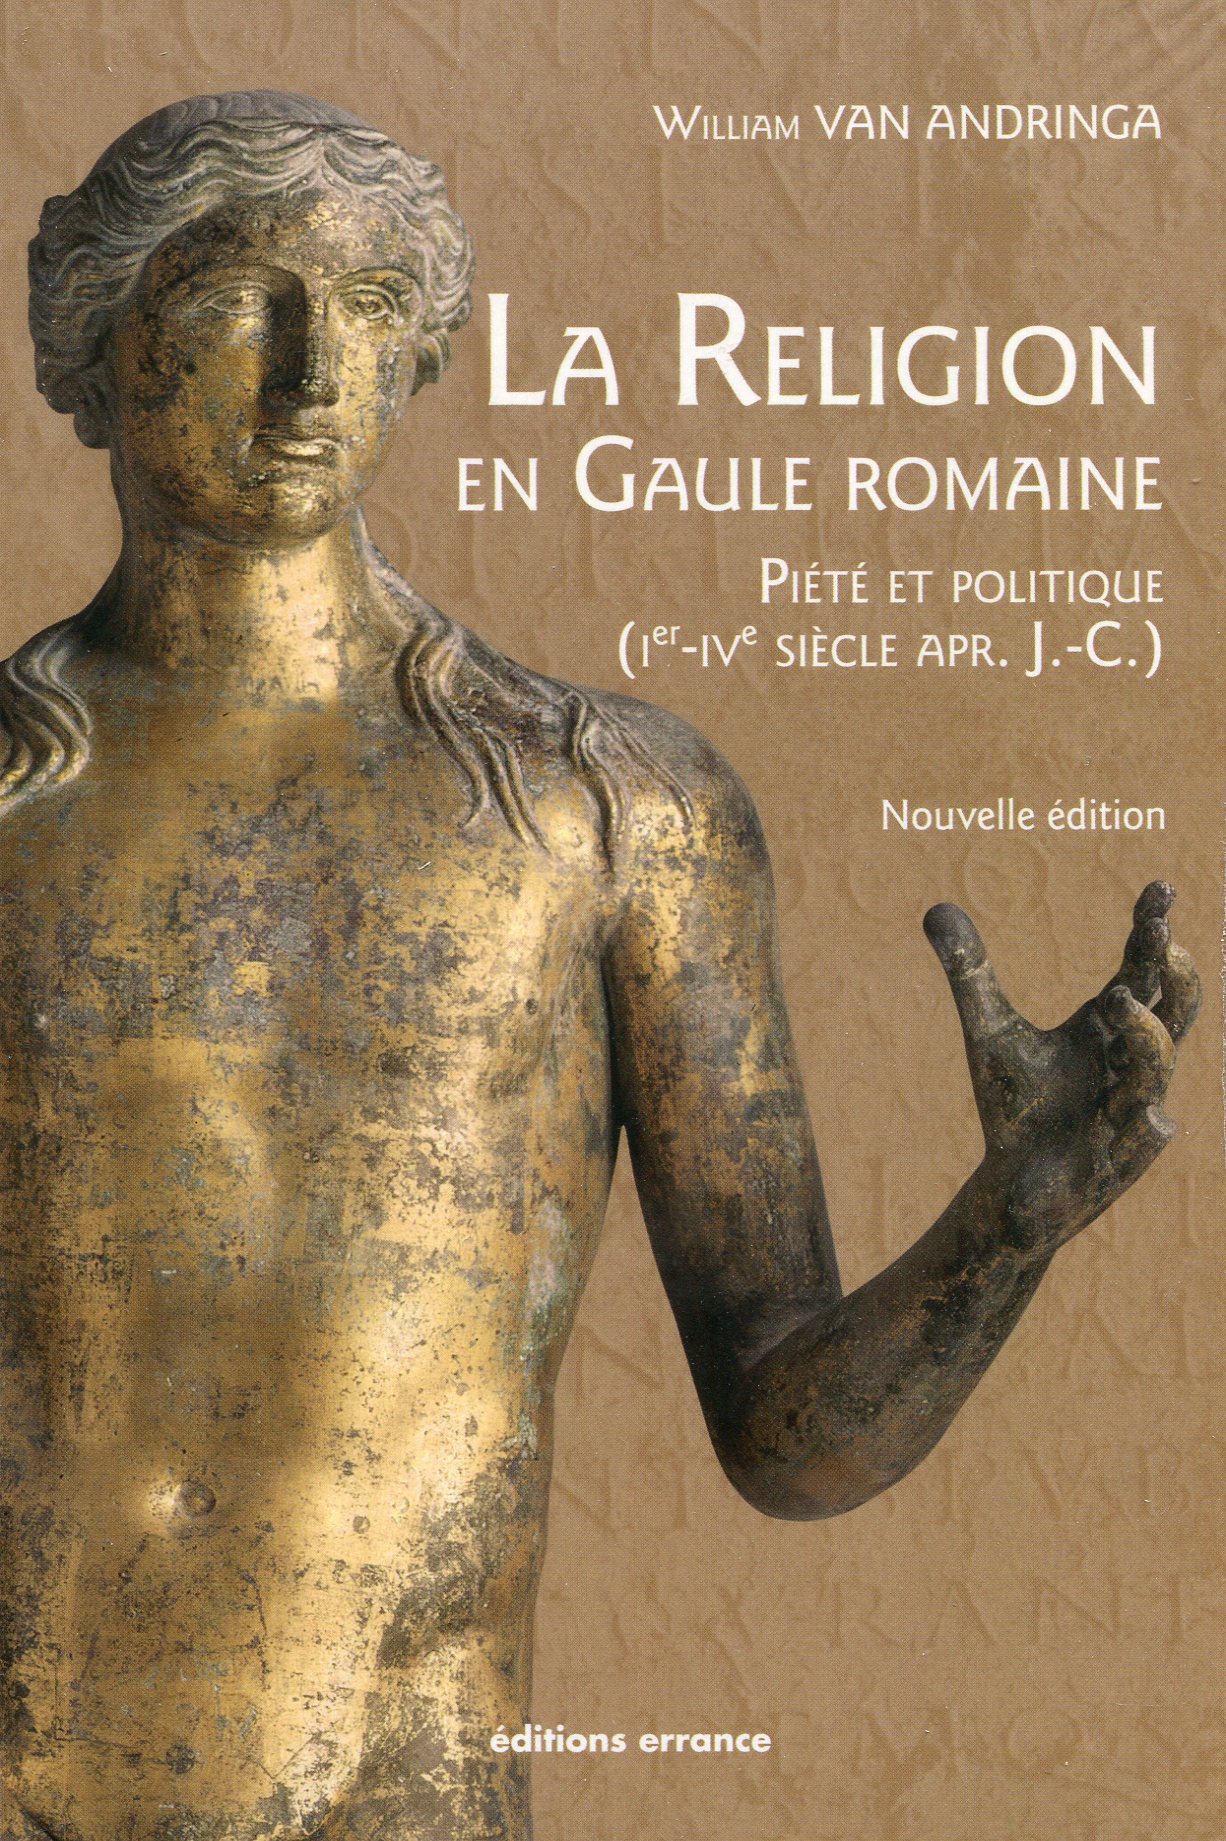 La religion en Gaule romaine. Piété et politique (Ier-IVe siècle apr. J.-C.), 2017, nouvelle édition, 336 p.